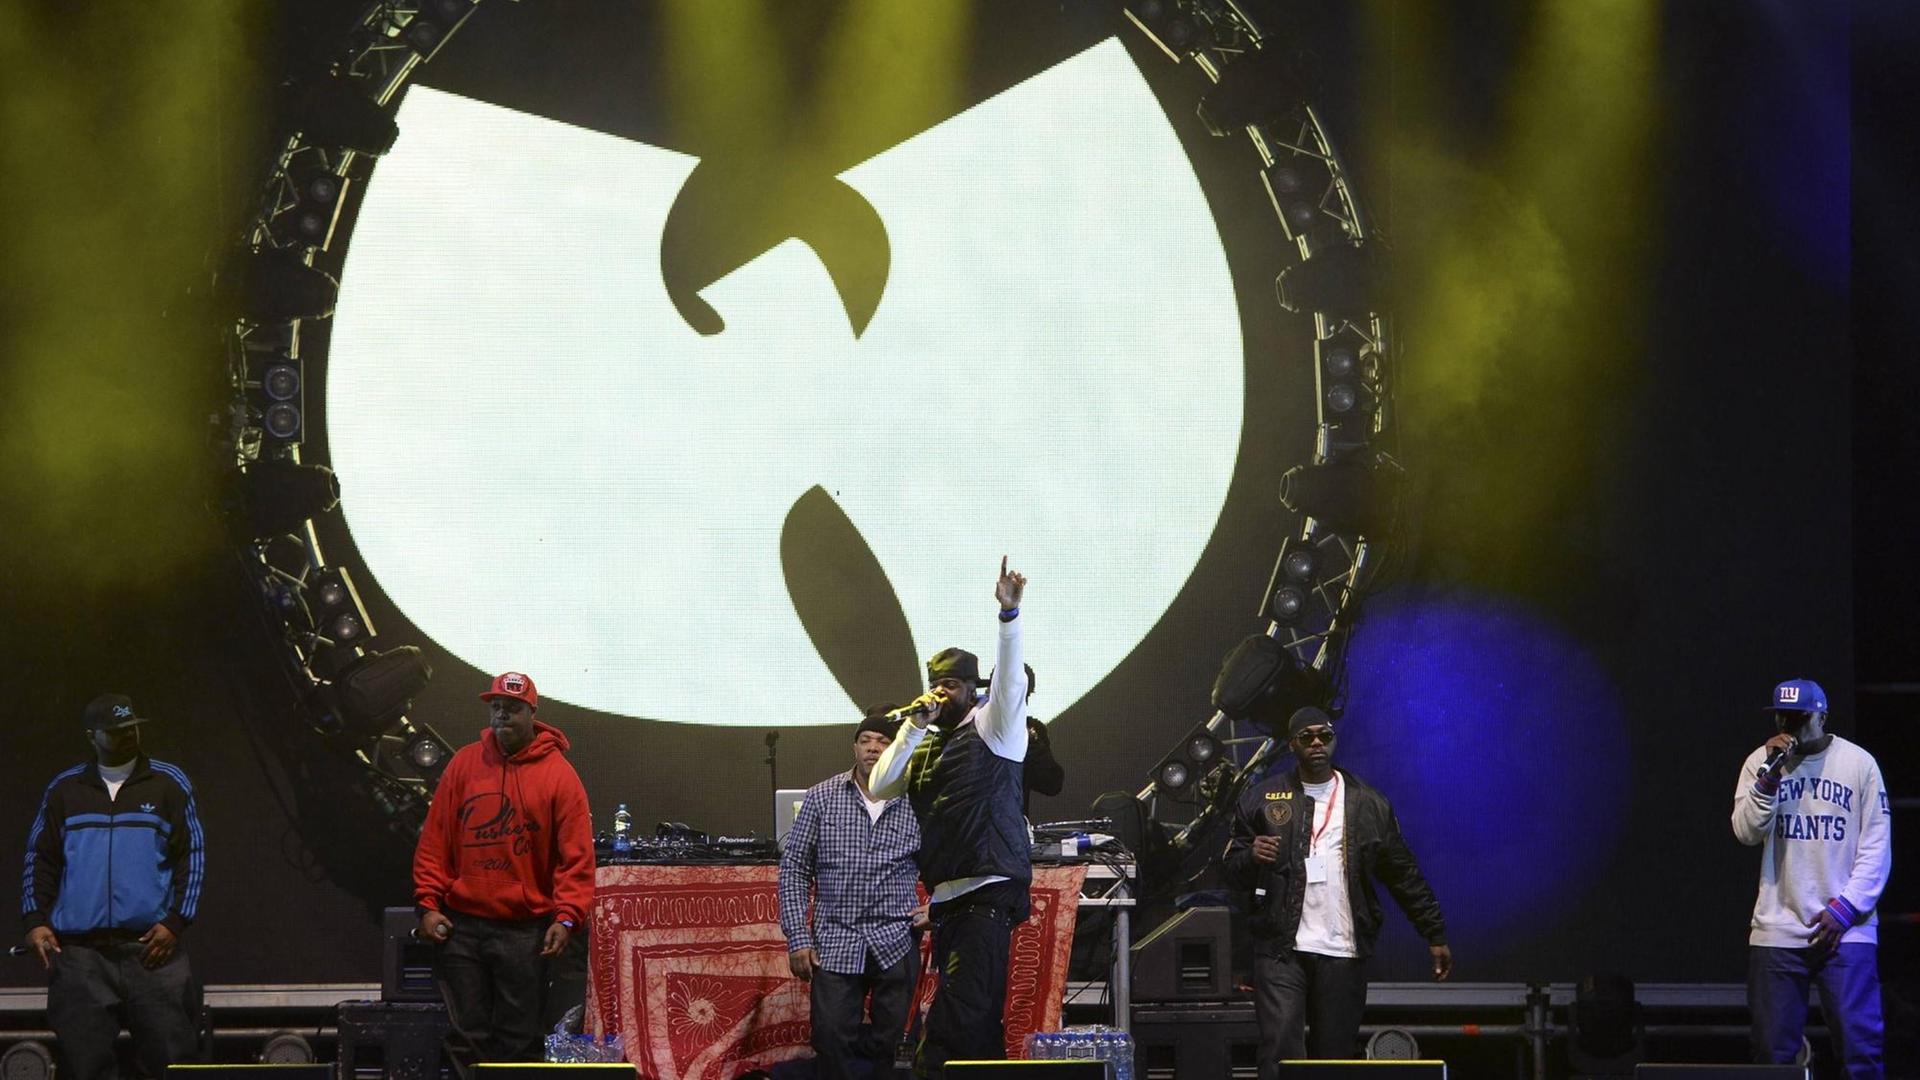 Vorne die Rapper, im Hintergrund das Wu-Tang Clan W.